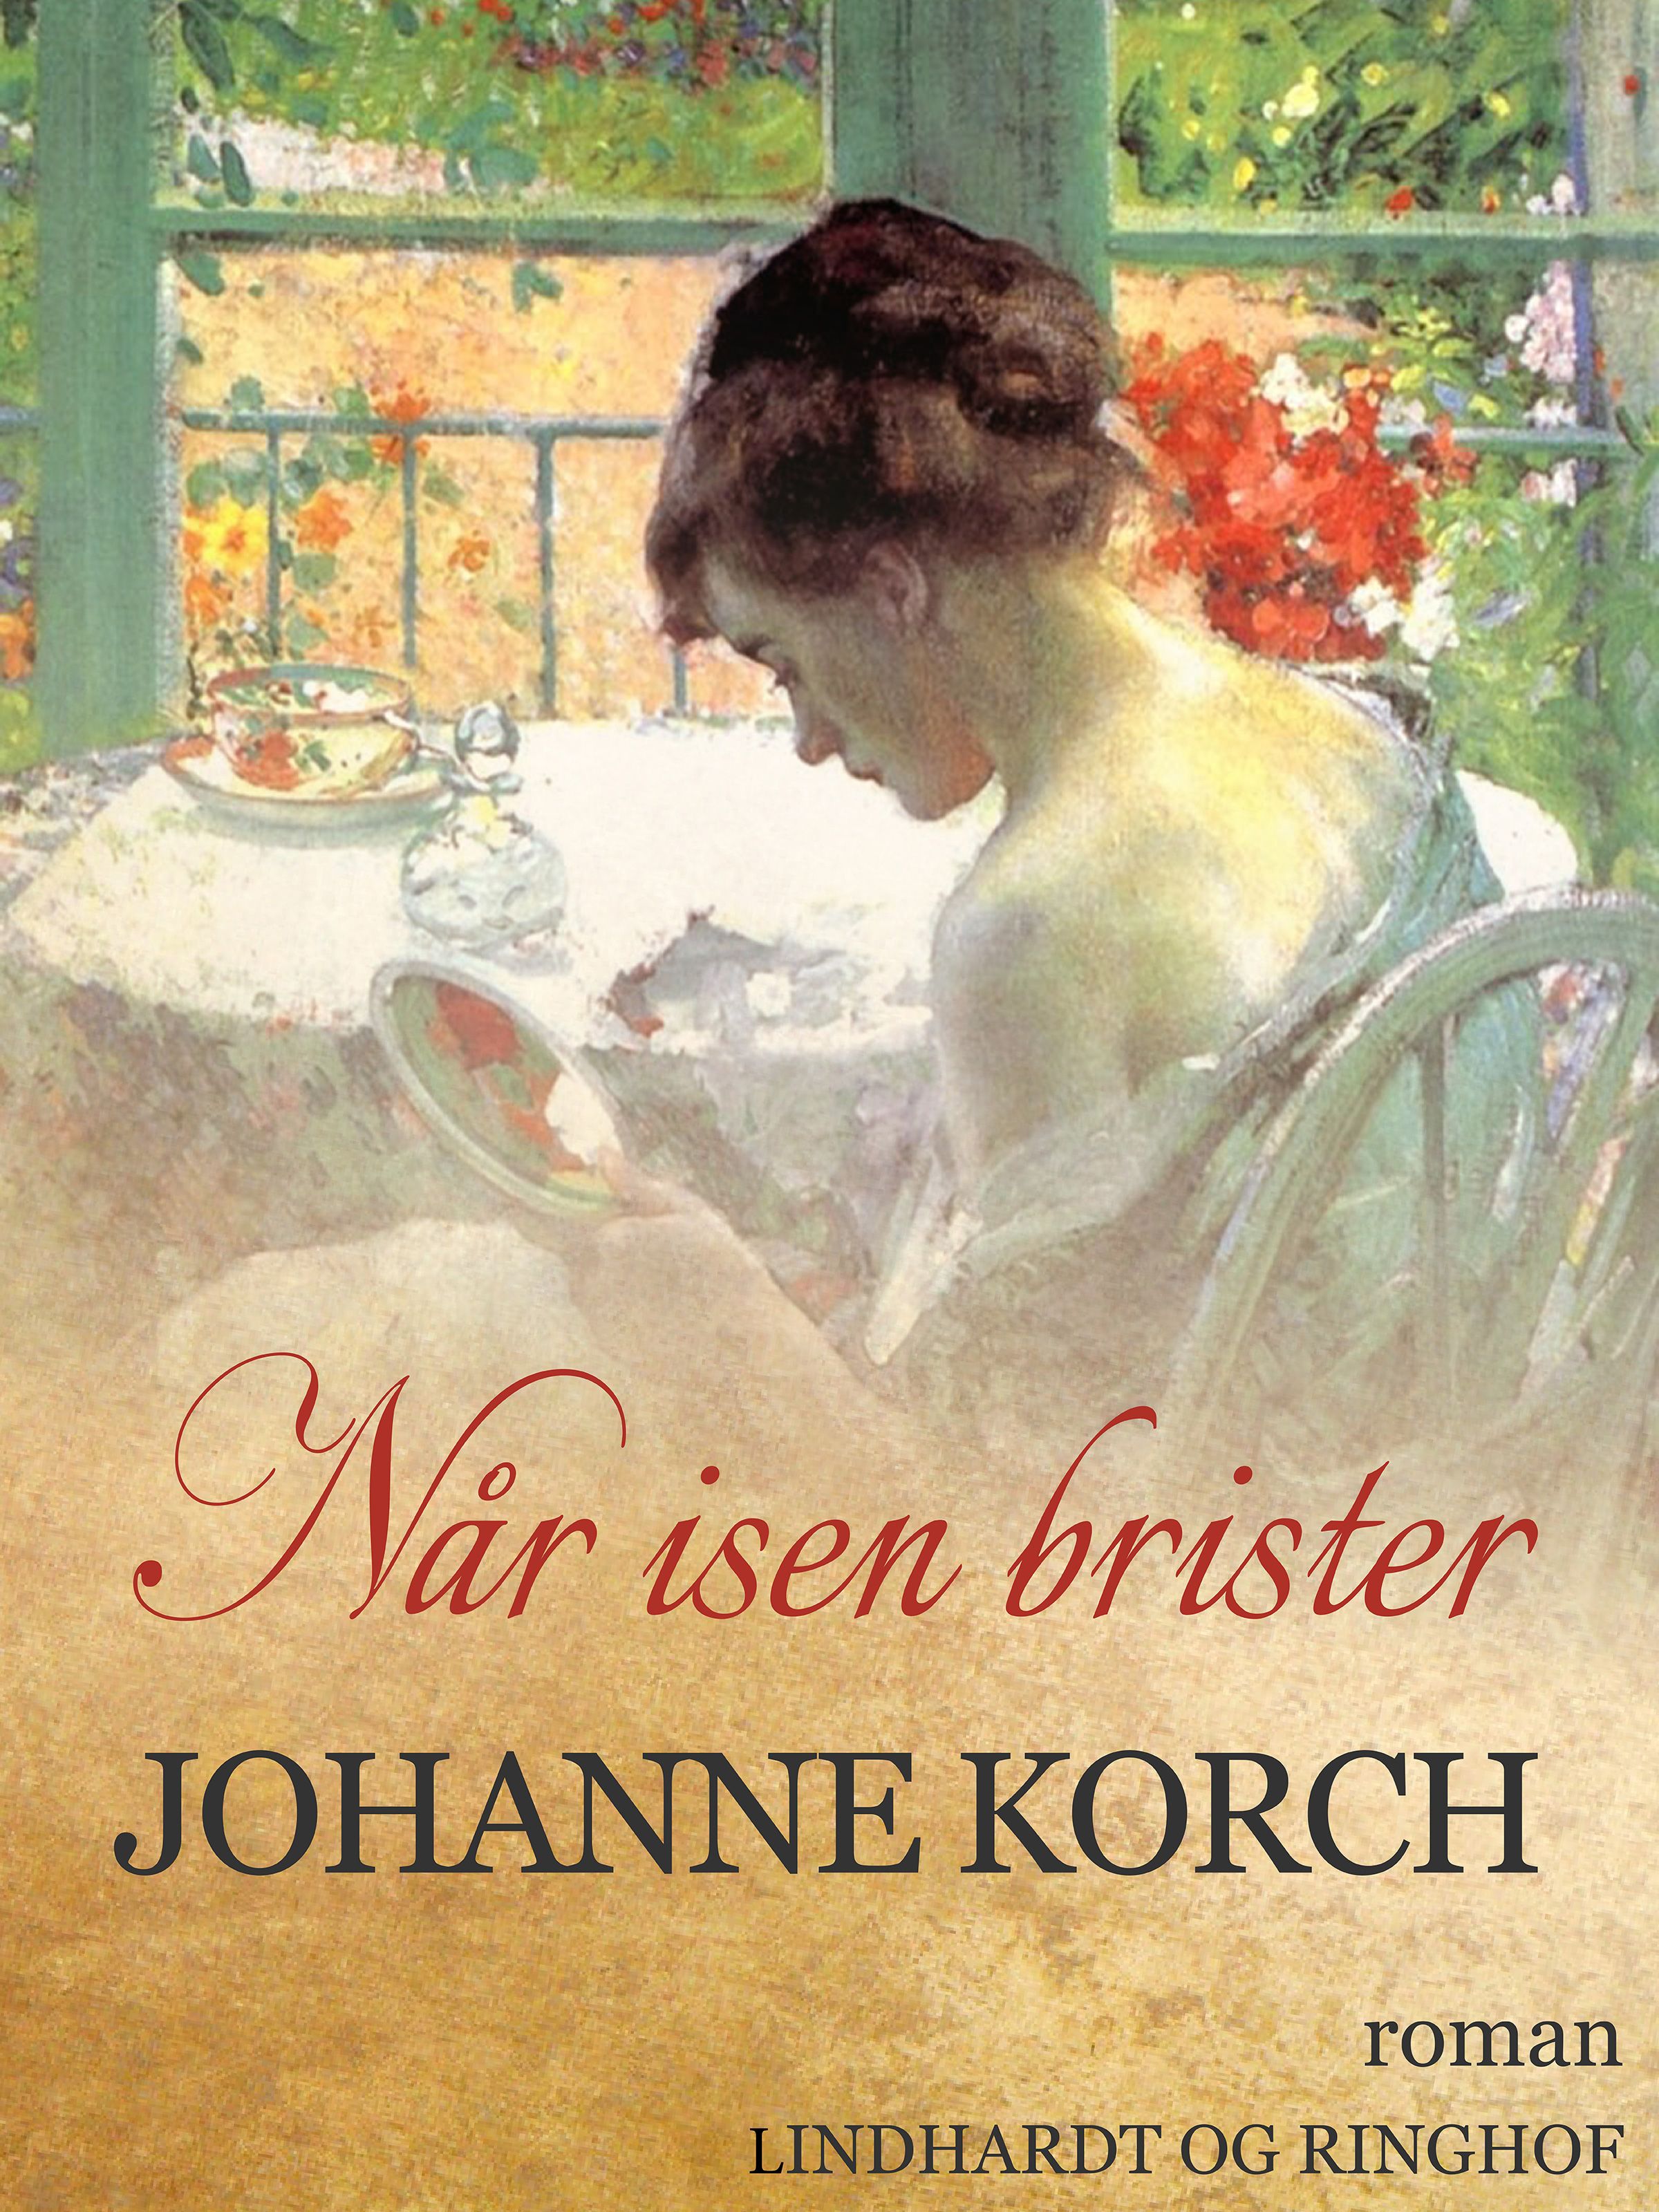 Når isen brister, ljudbok av Johanne Korch